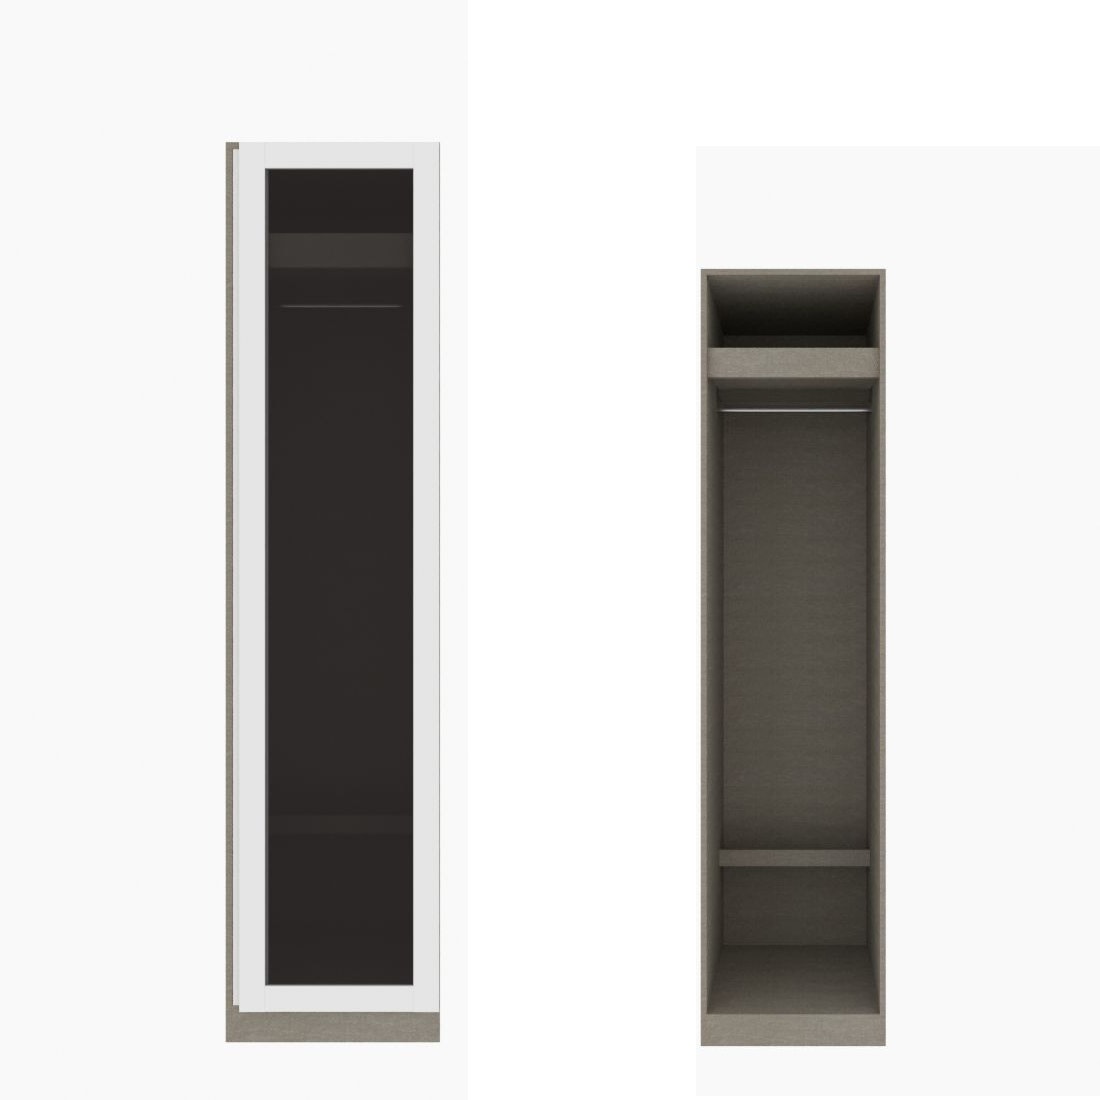 ตู้เสื้อผ้า ราวแขวนโล่ง OP-J (หน้าบานเปิดขวา) ขนาด 50 ซม. รุ่น Blox สีขาว&กระจกชาดำ01